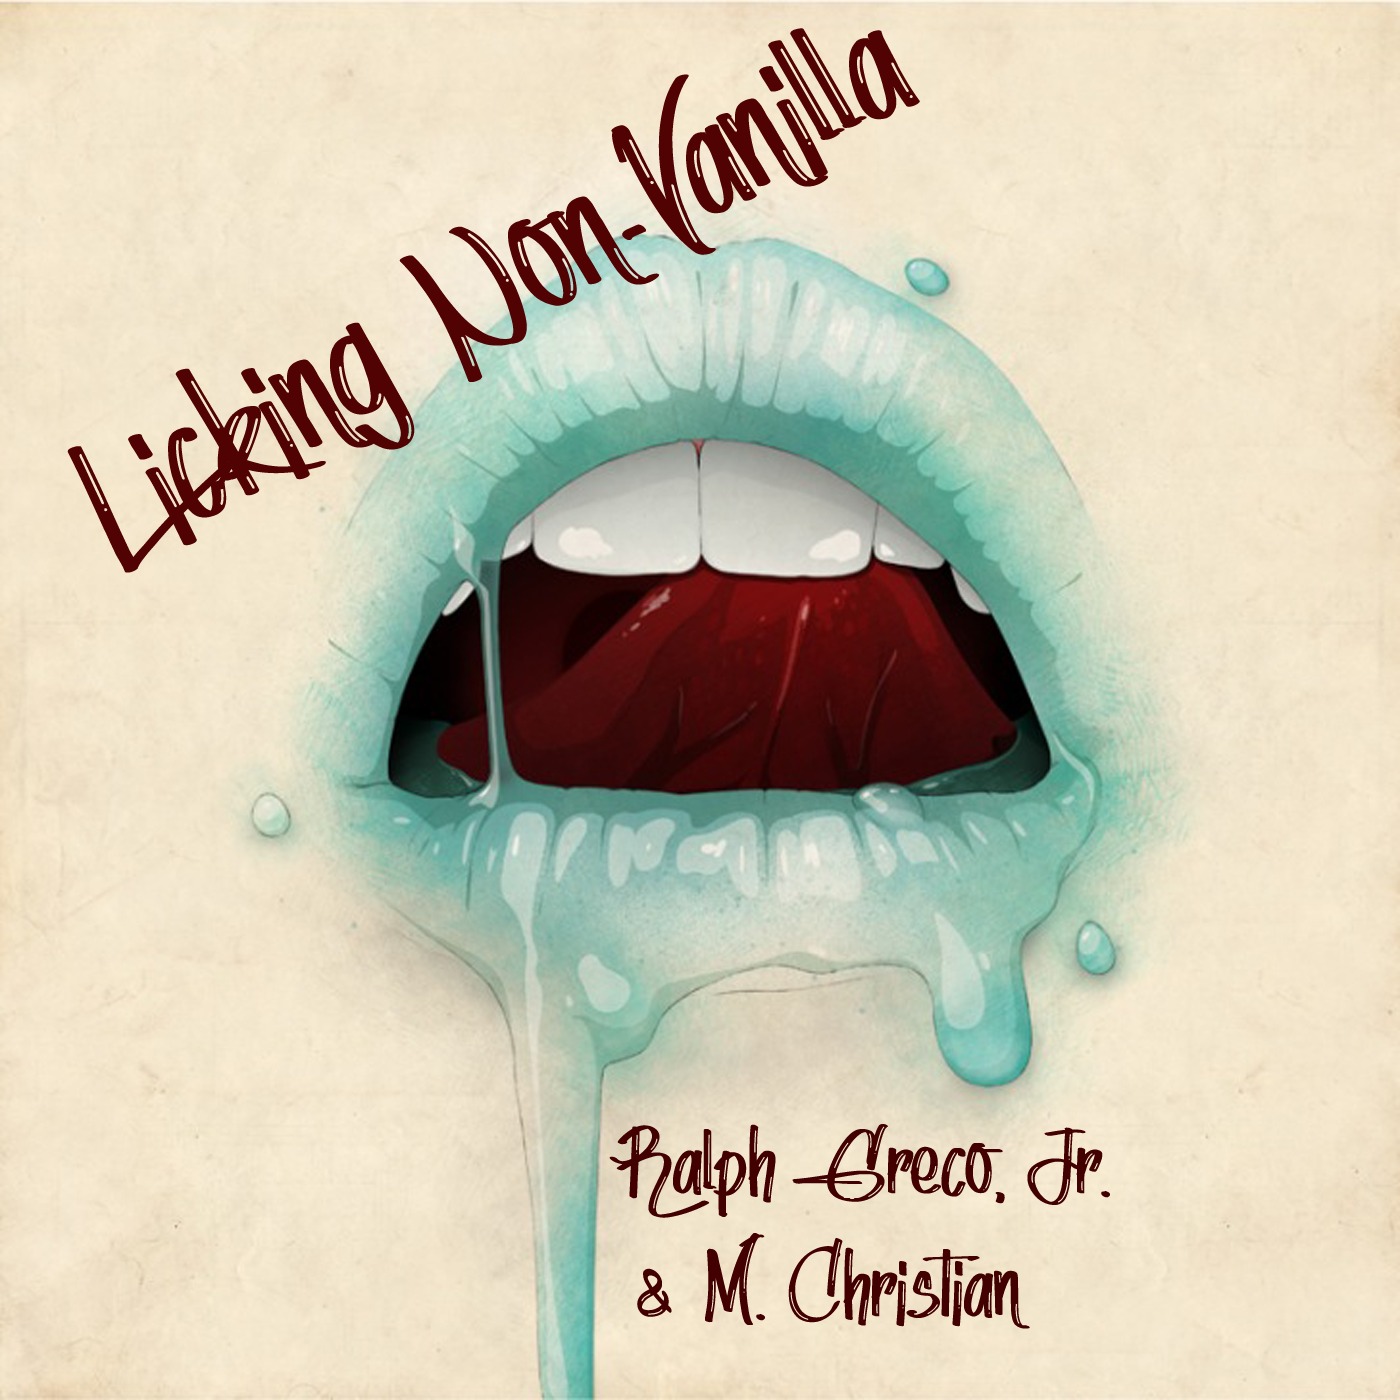 Licking Non-Vanilla - 22-Octavia Returns!